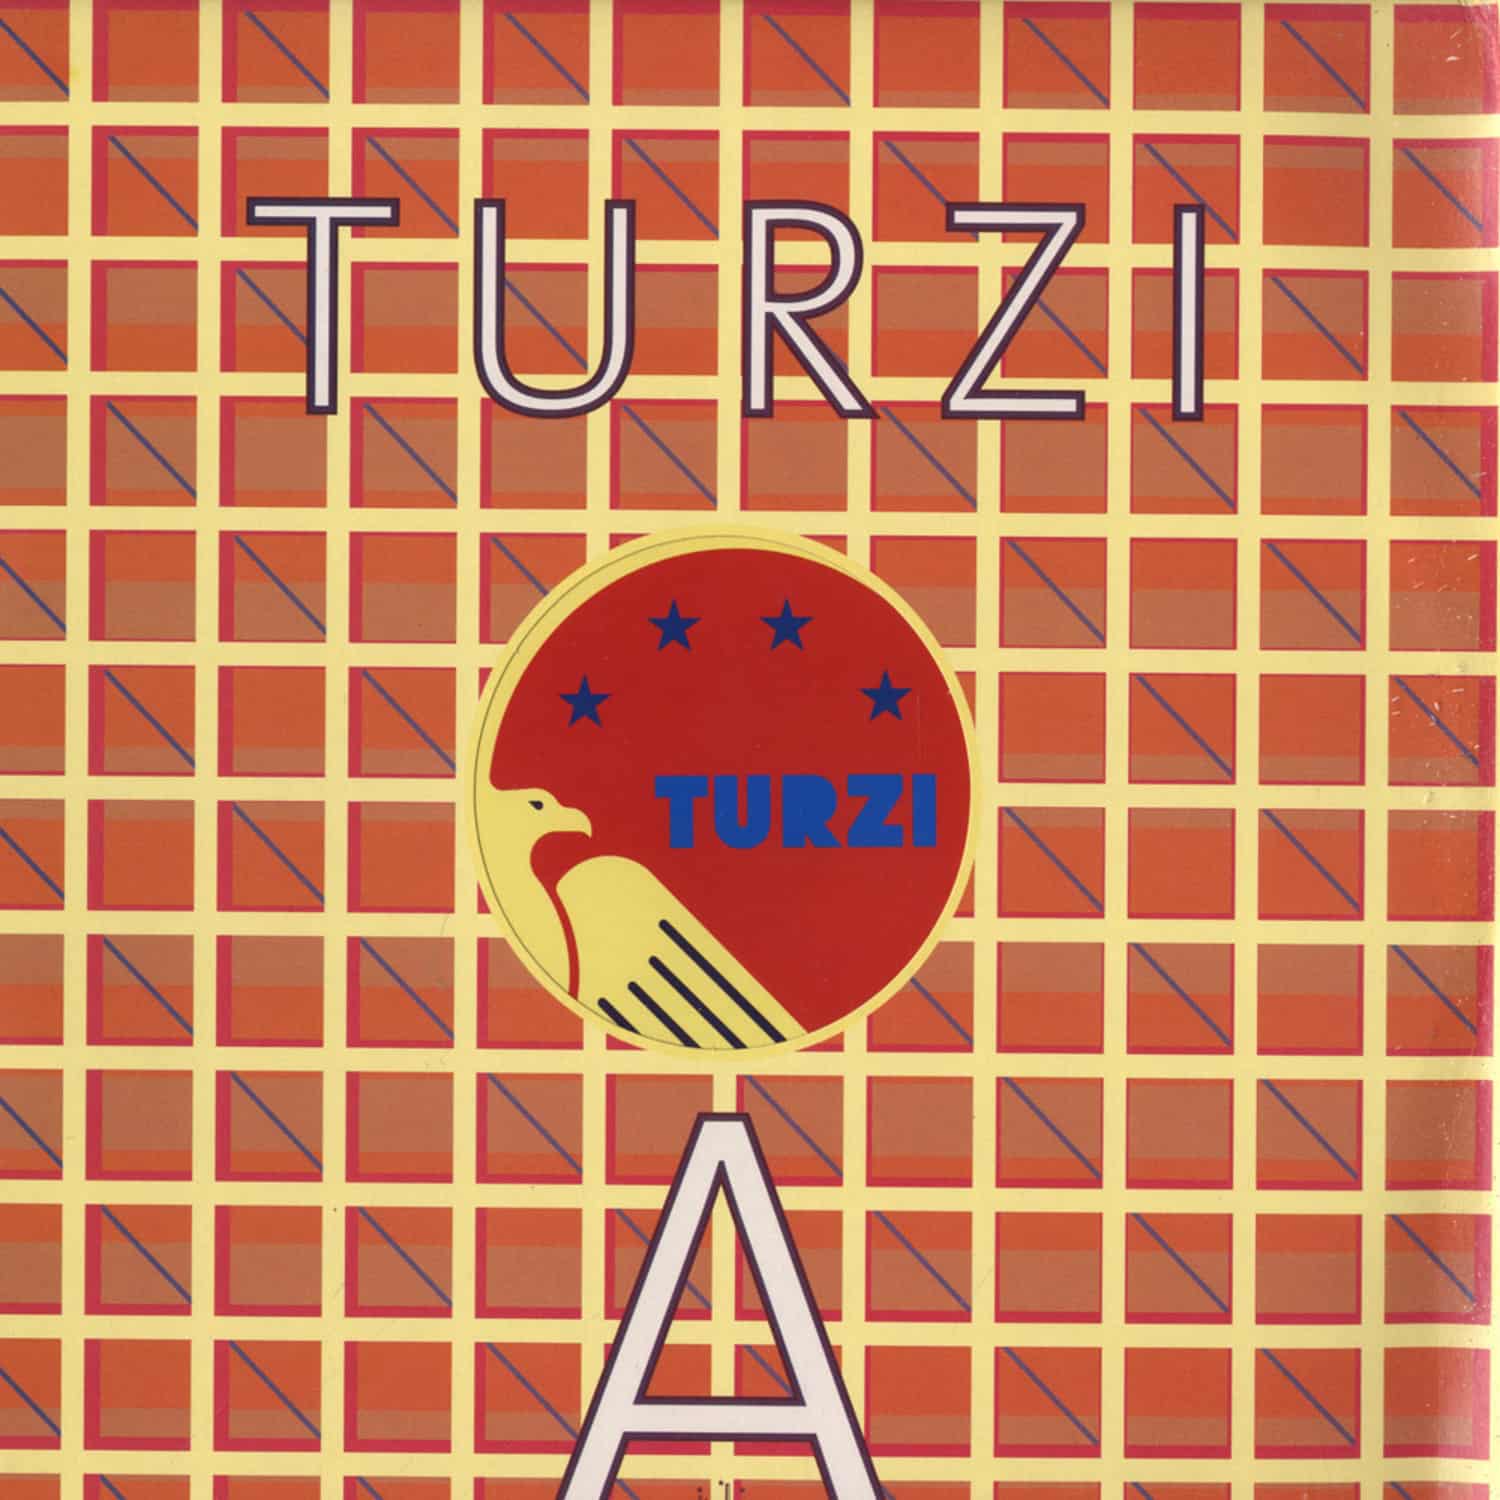 Turzi - A 